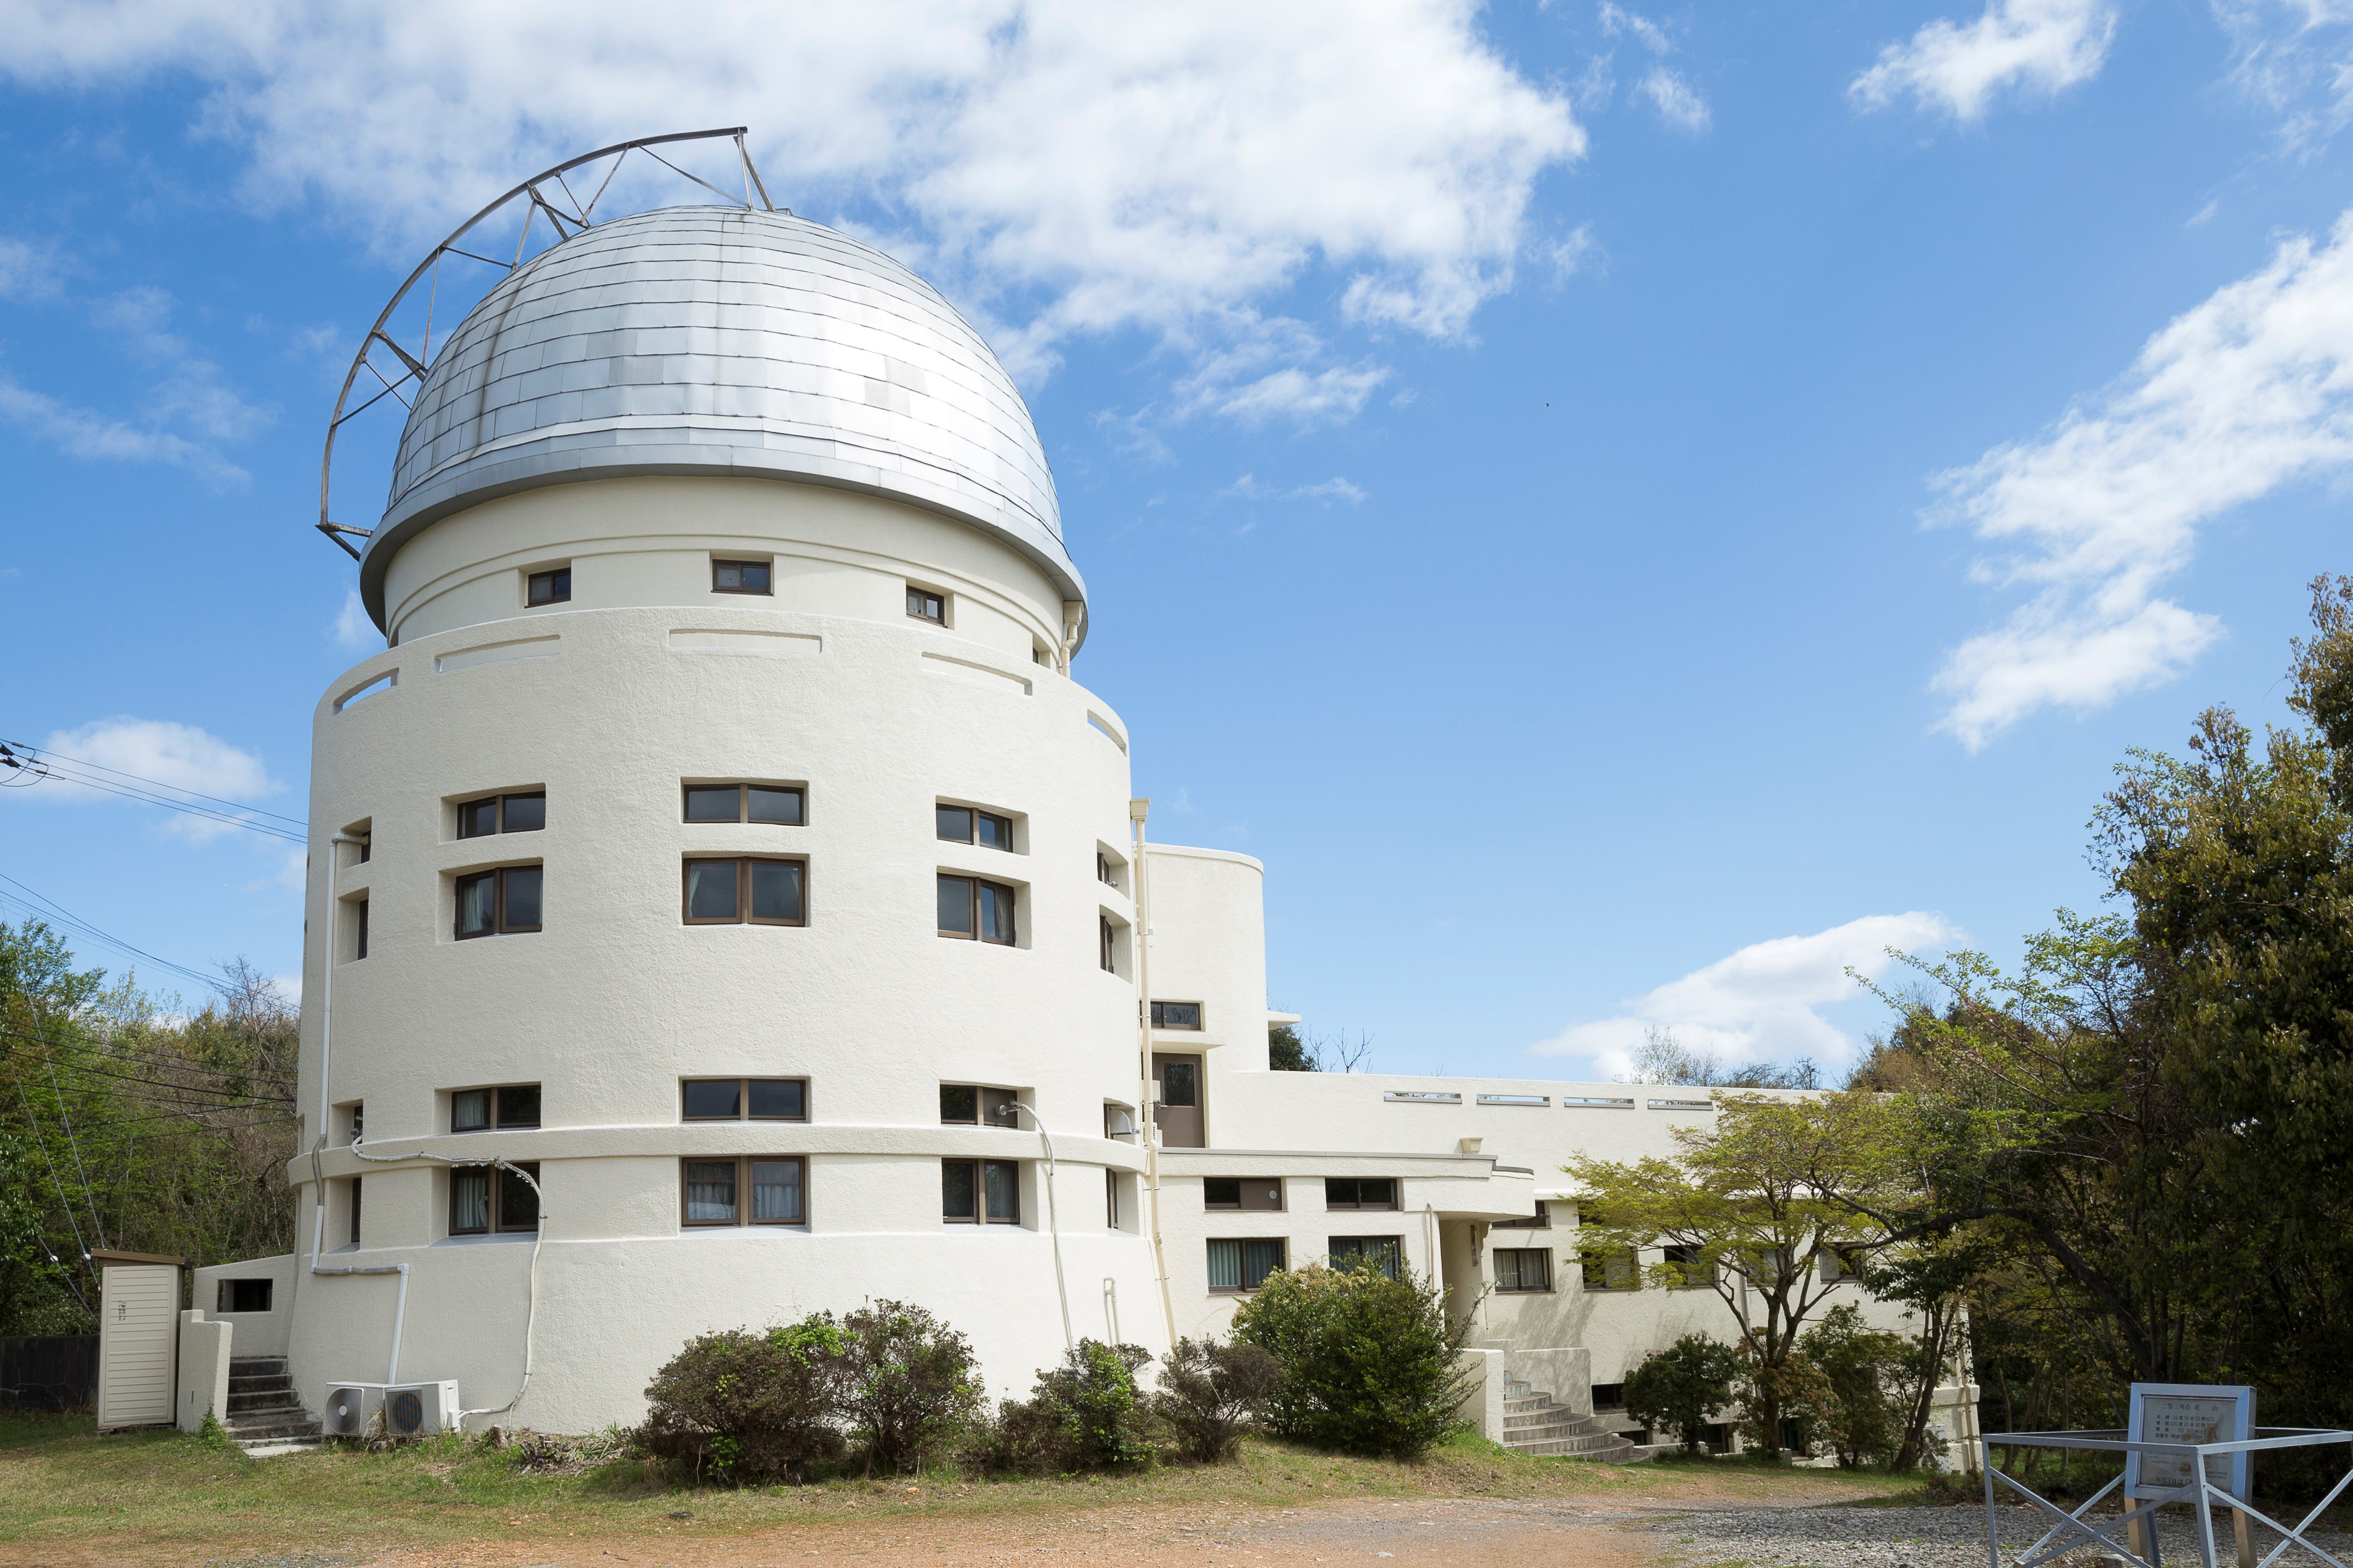  花山天文台存続への支援